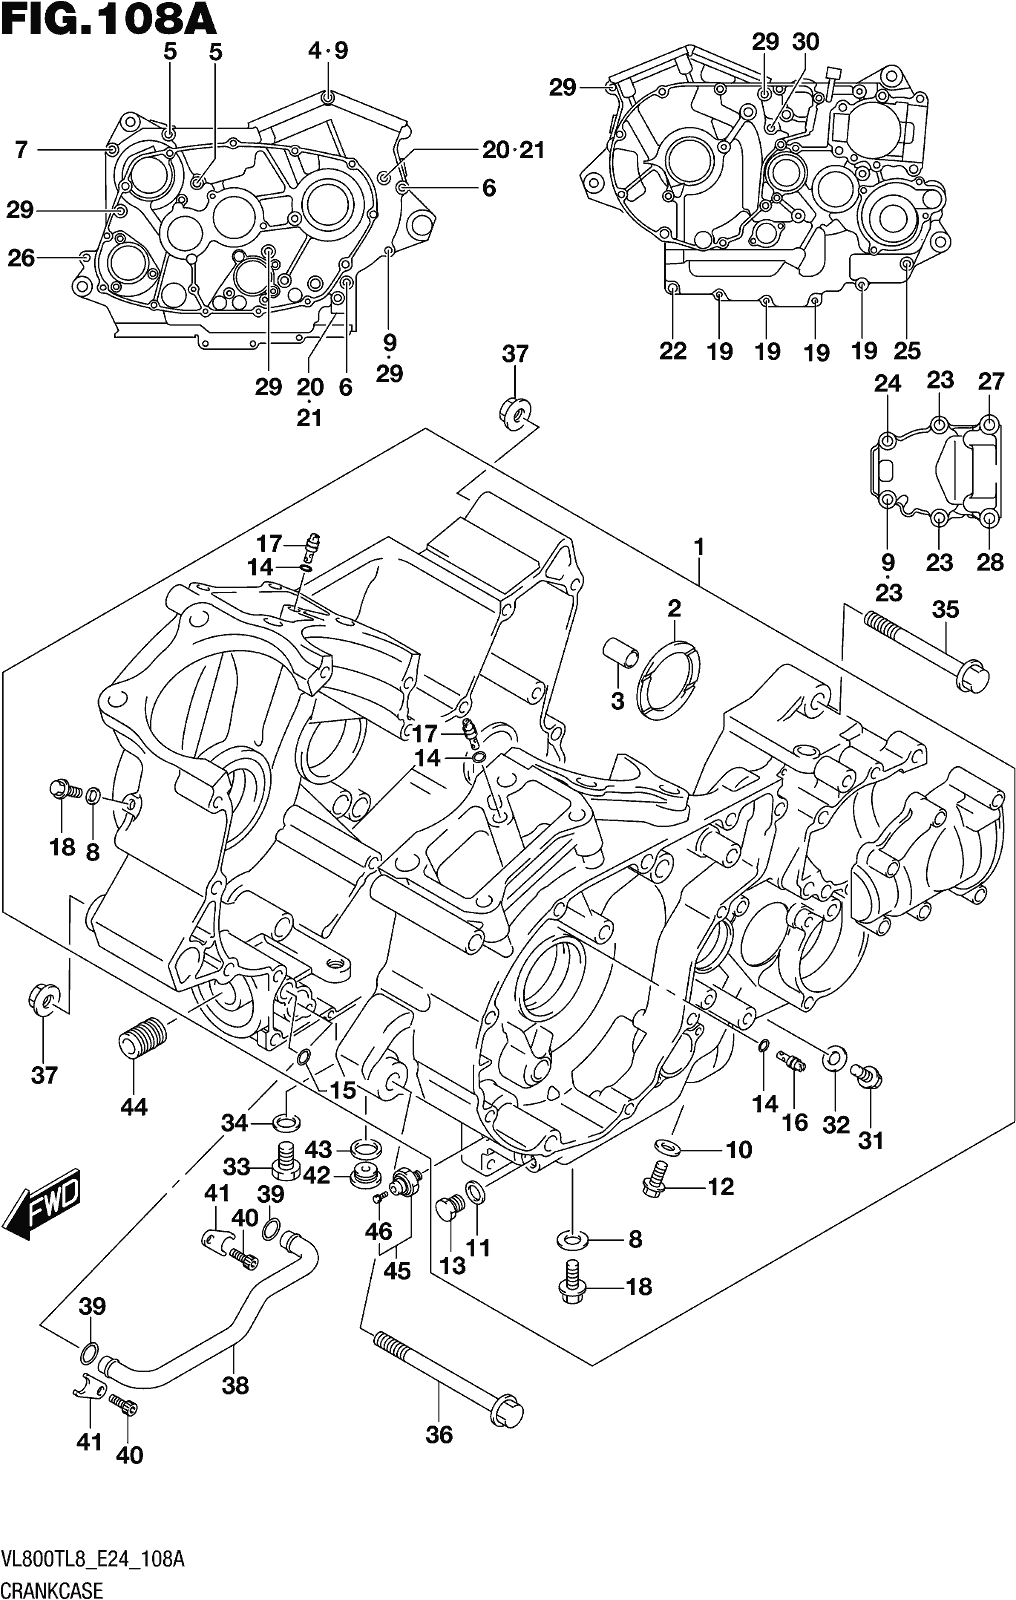 Alle Teile für das Fig. 108a Crankcase des Suzuki VL 800T 2018